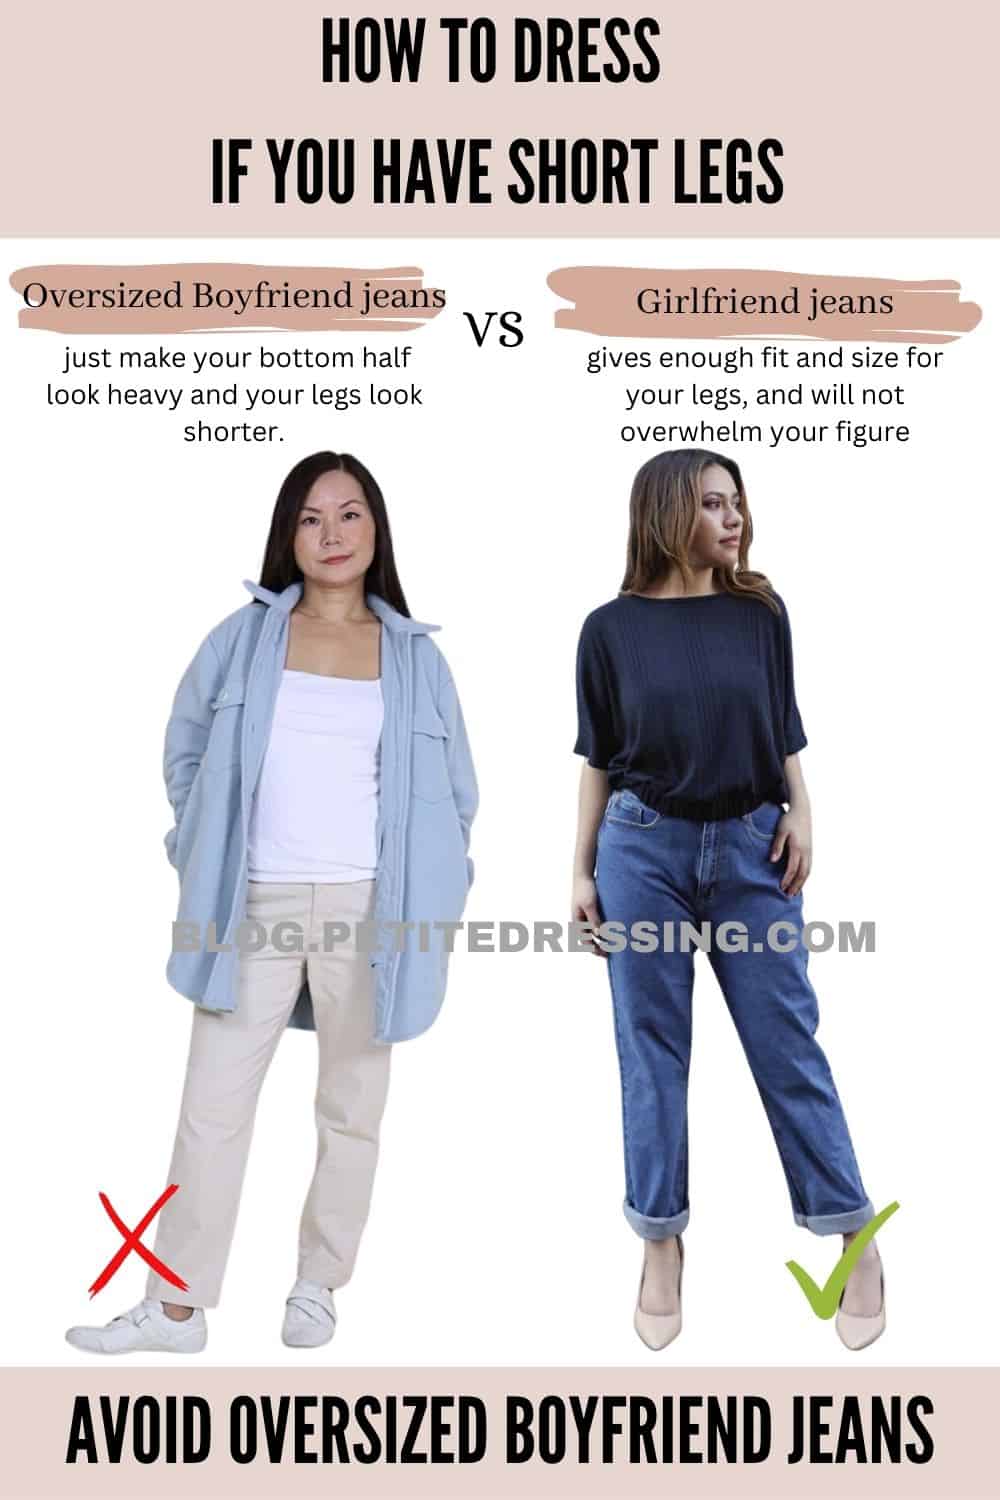 Avoid oversized boyfriend jeans